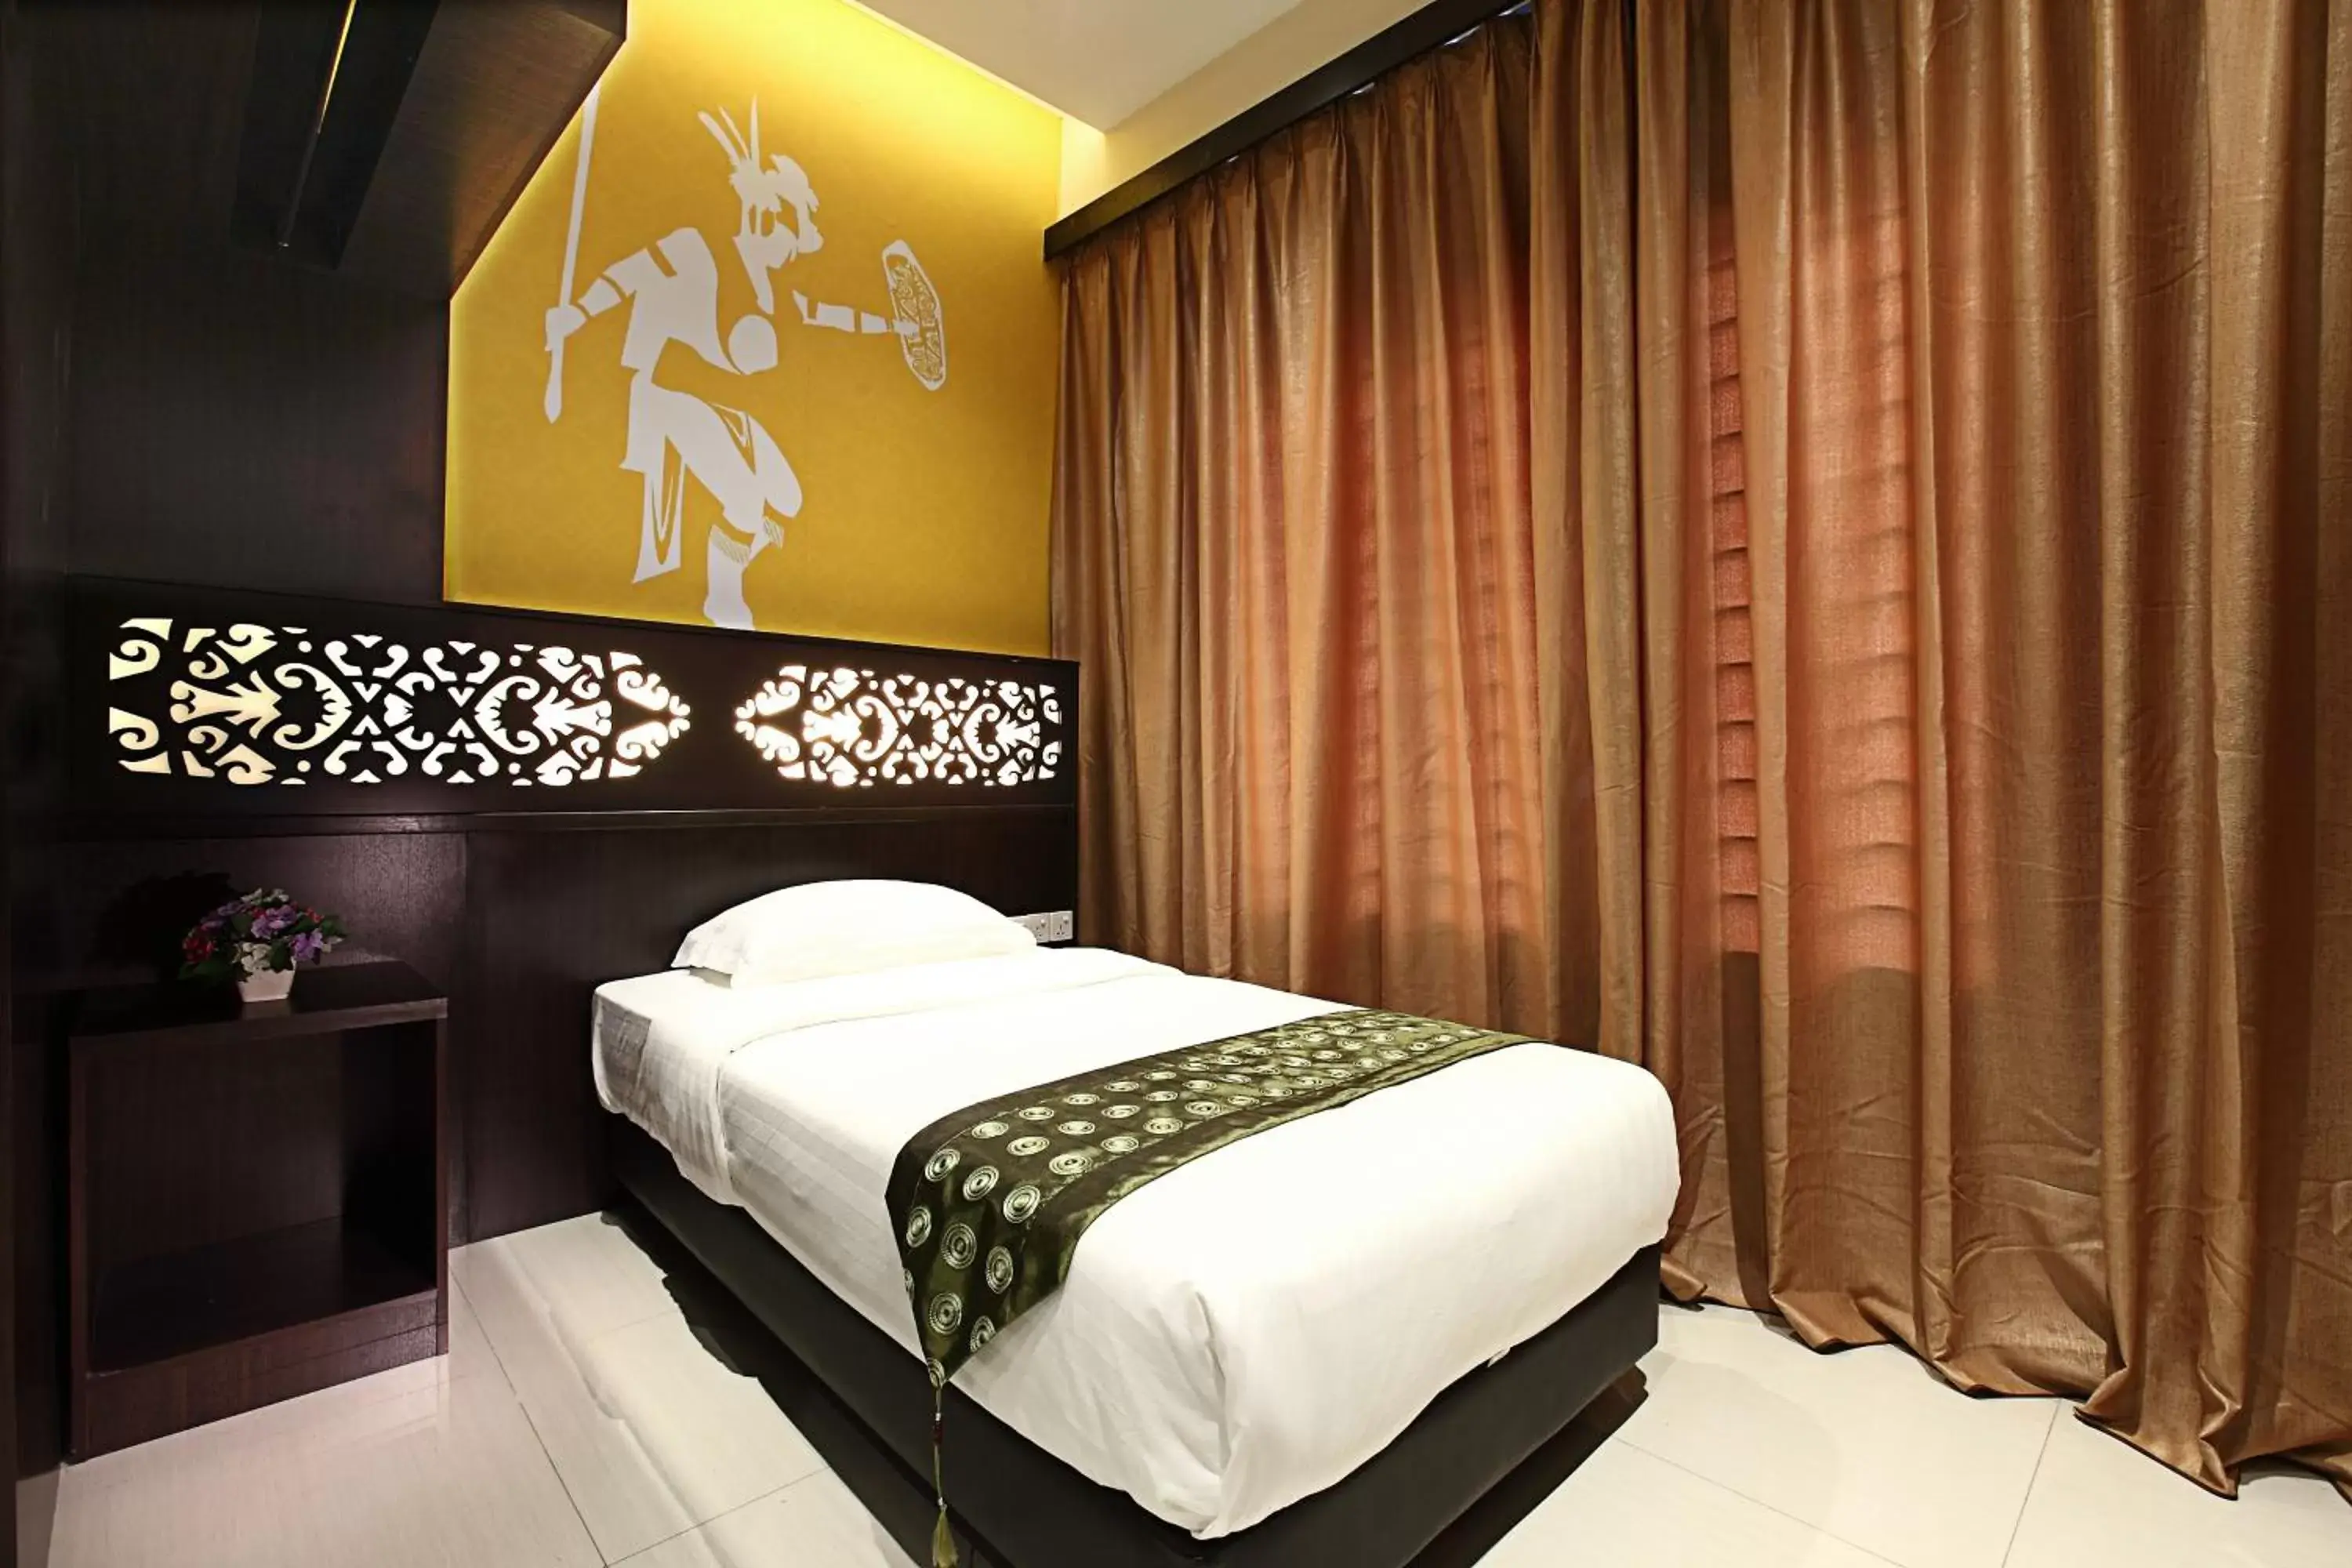 Single Room in Sri Enstek Hotel KLIA, KLIA 2 & F1